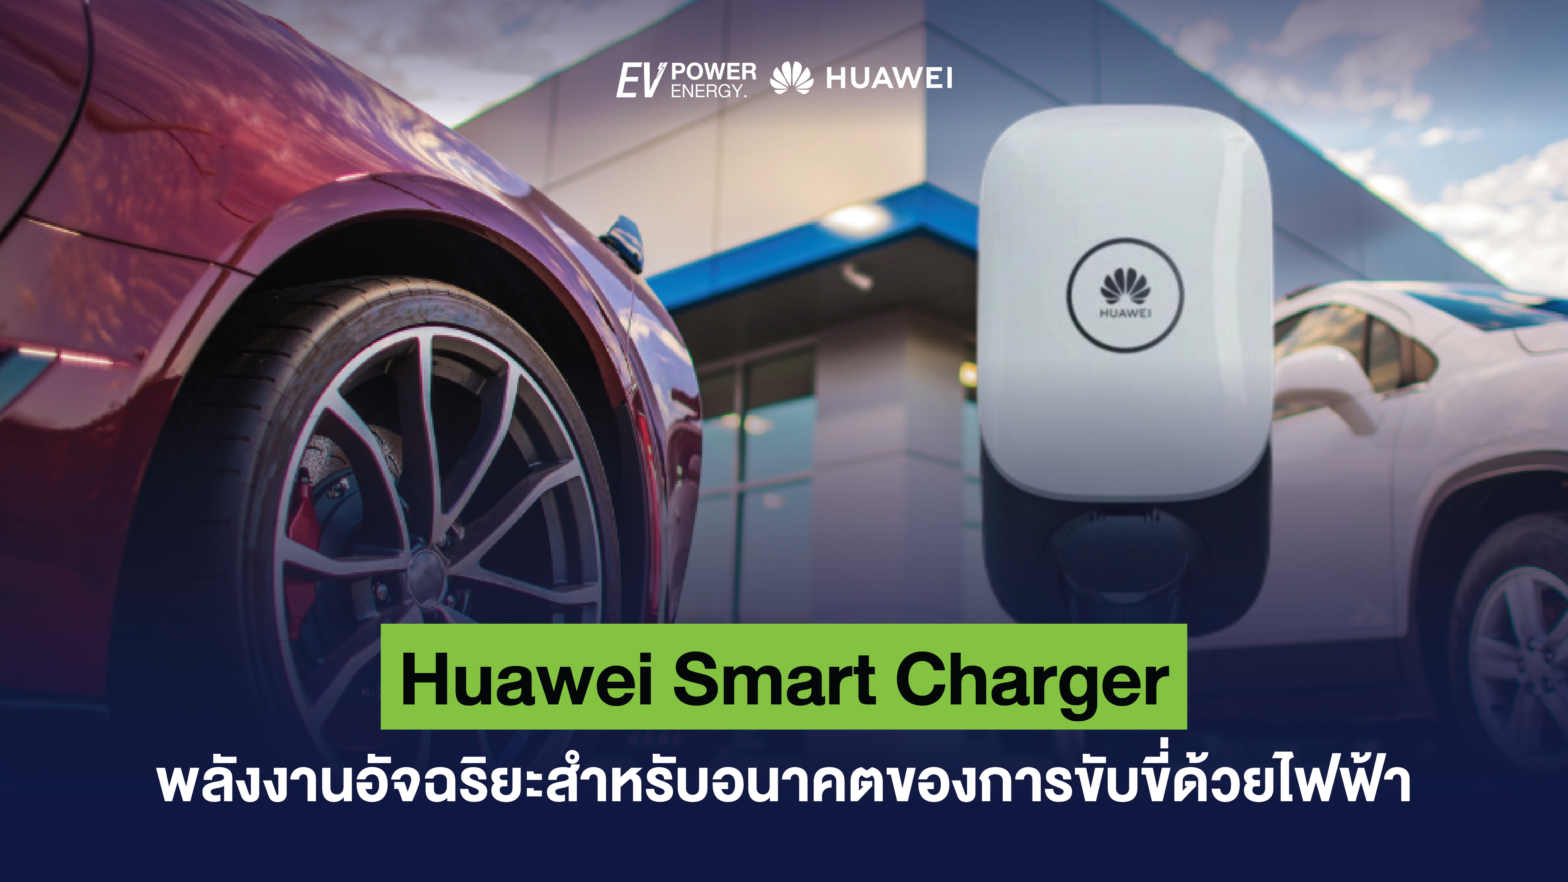 Huawei Smart Charger พลังงานอัจฉริยะสำหรับอนาคตของการขับขี่ด้วยไฟฟ้า